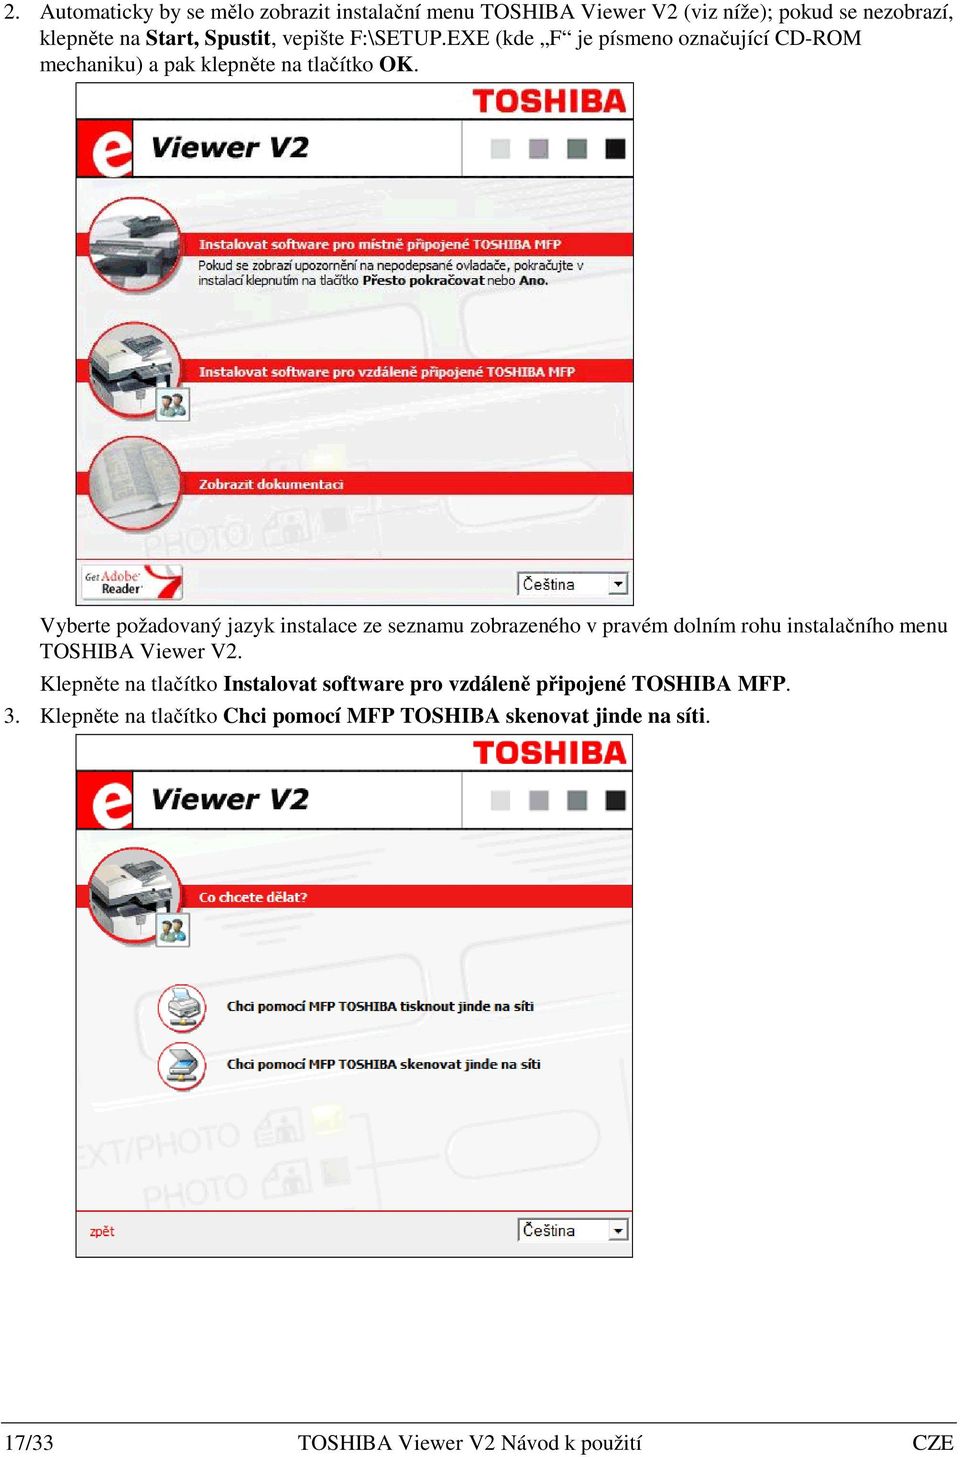 Vyberte požadovaný jazyk instalace ze seznamu zobrazeného v pravém dolním rohu instalačního menu TOSHIBA Viewer V2.